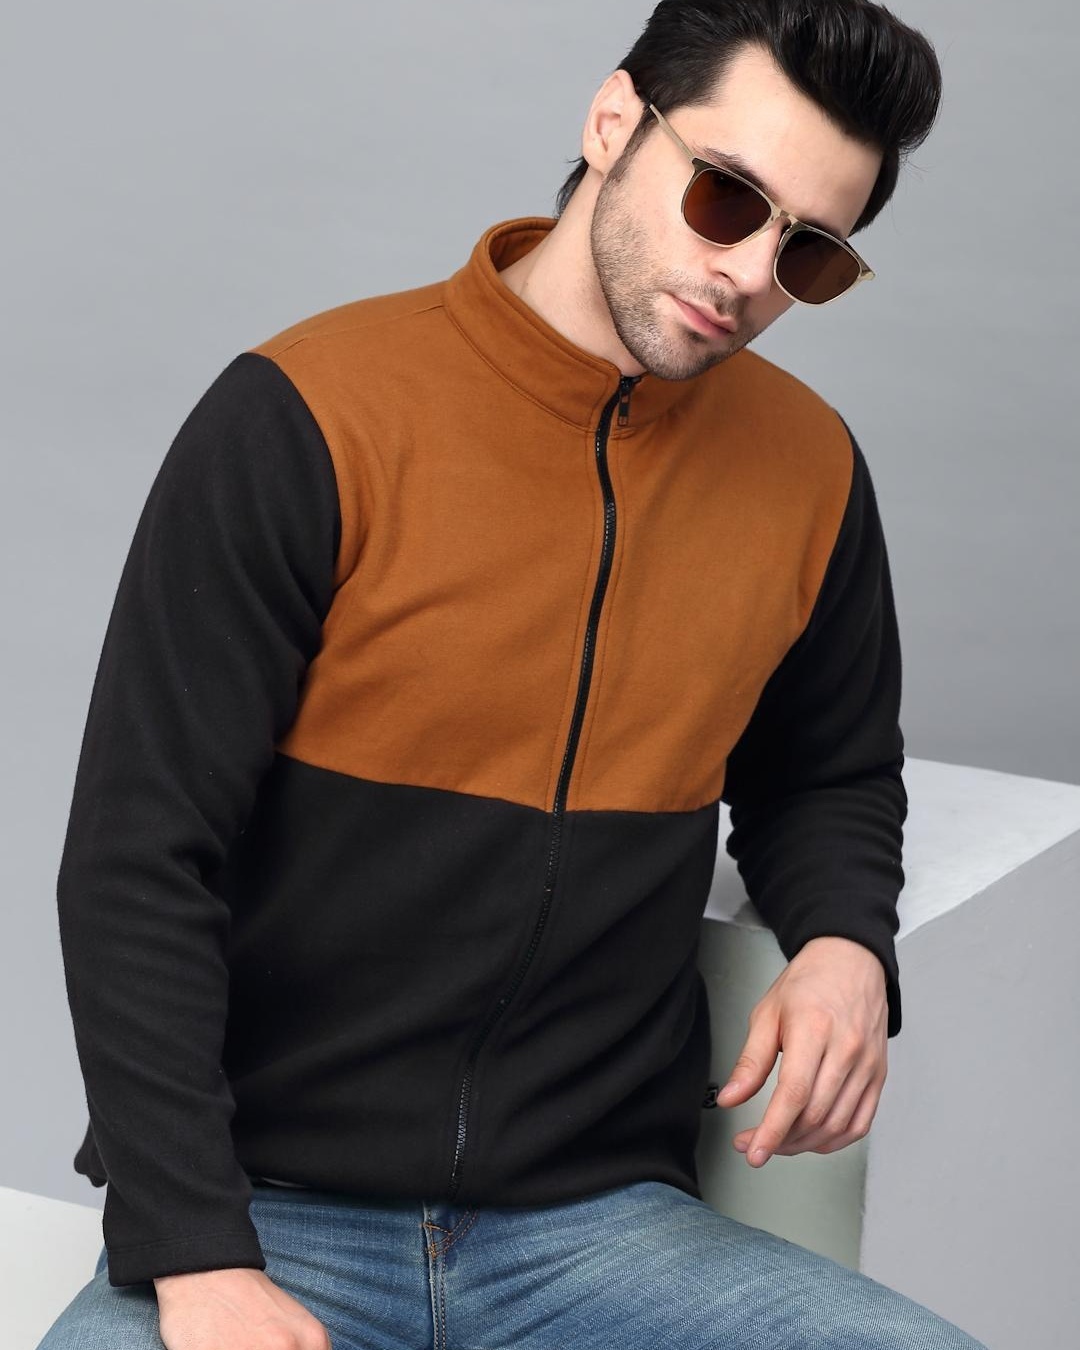 Shop Men's Black and Brown Color Block Slim Fit Jacket